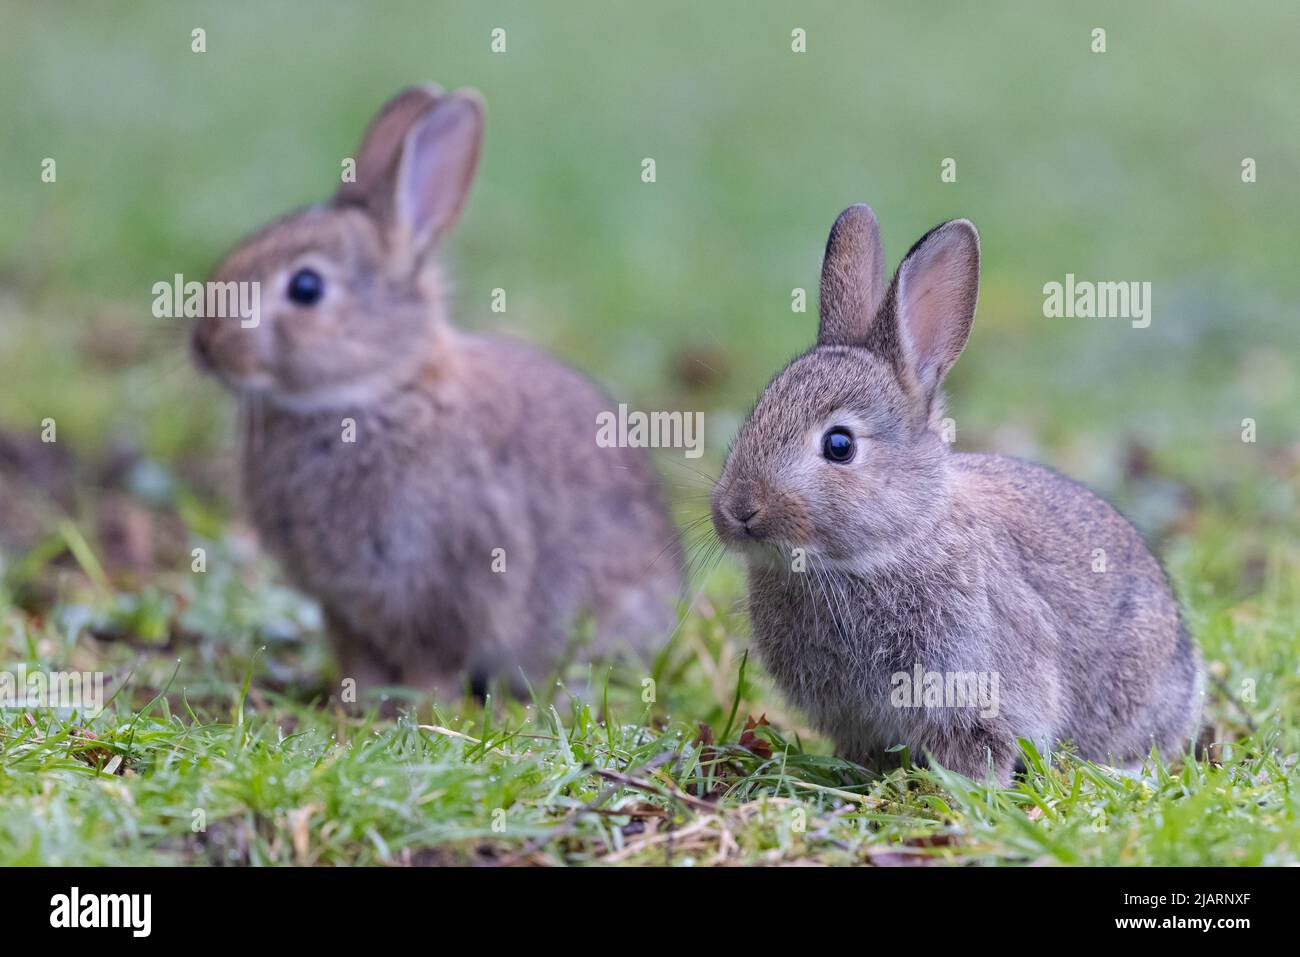 Jeunes lapins européens [ Oryctolagus cuniculus ] se nourrissant sur les prairies, Royaume-Uni Banque D'Images